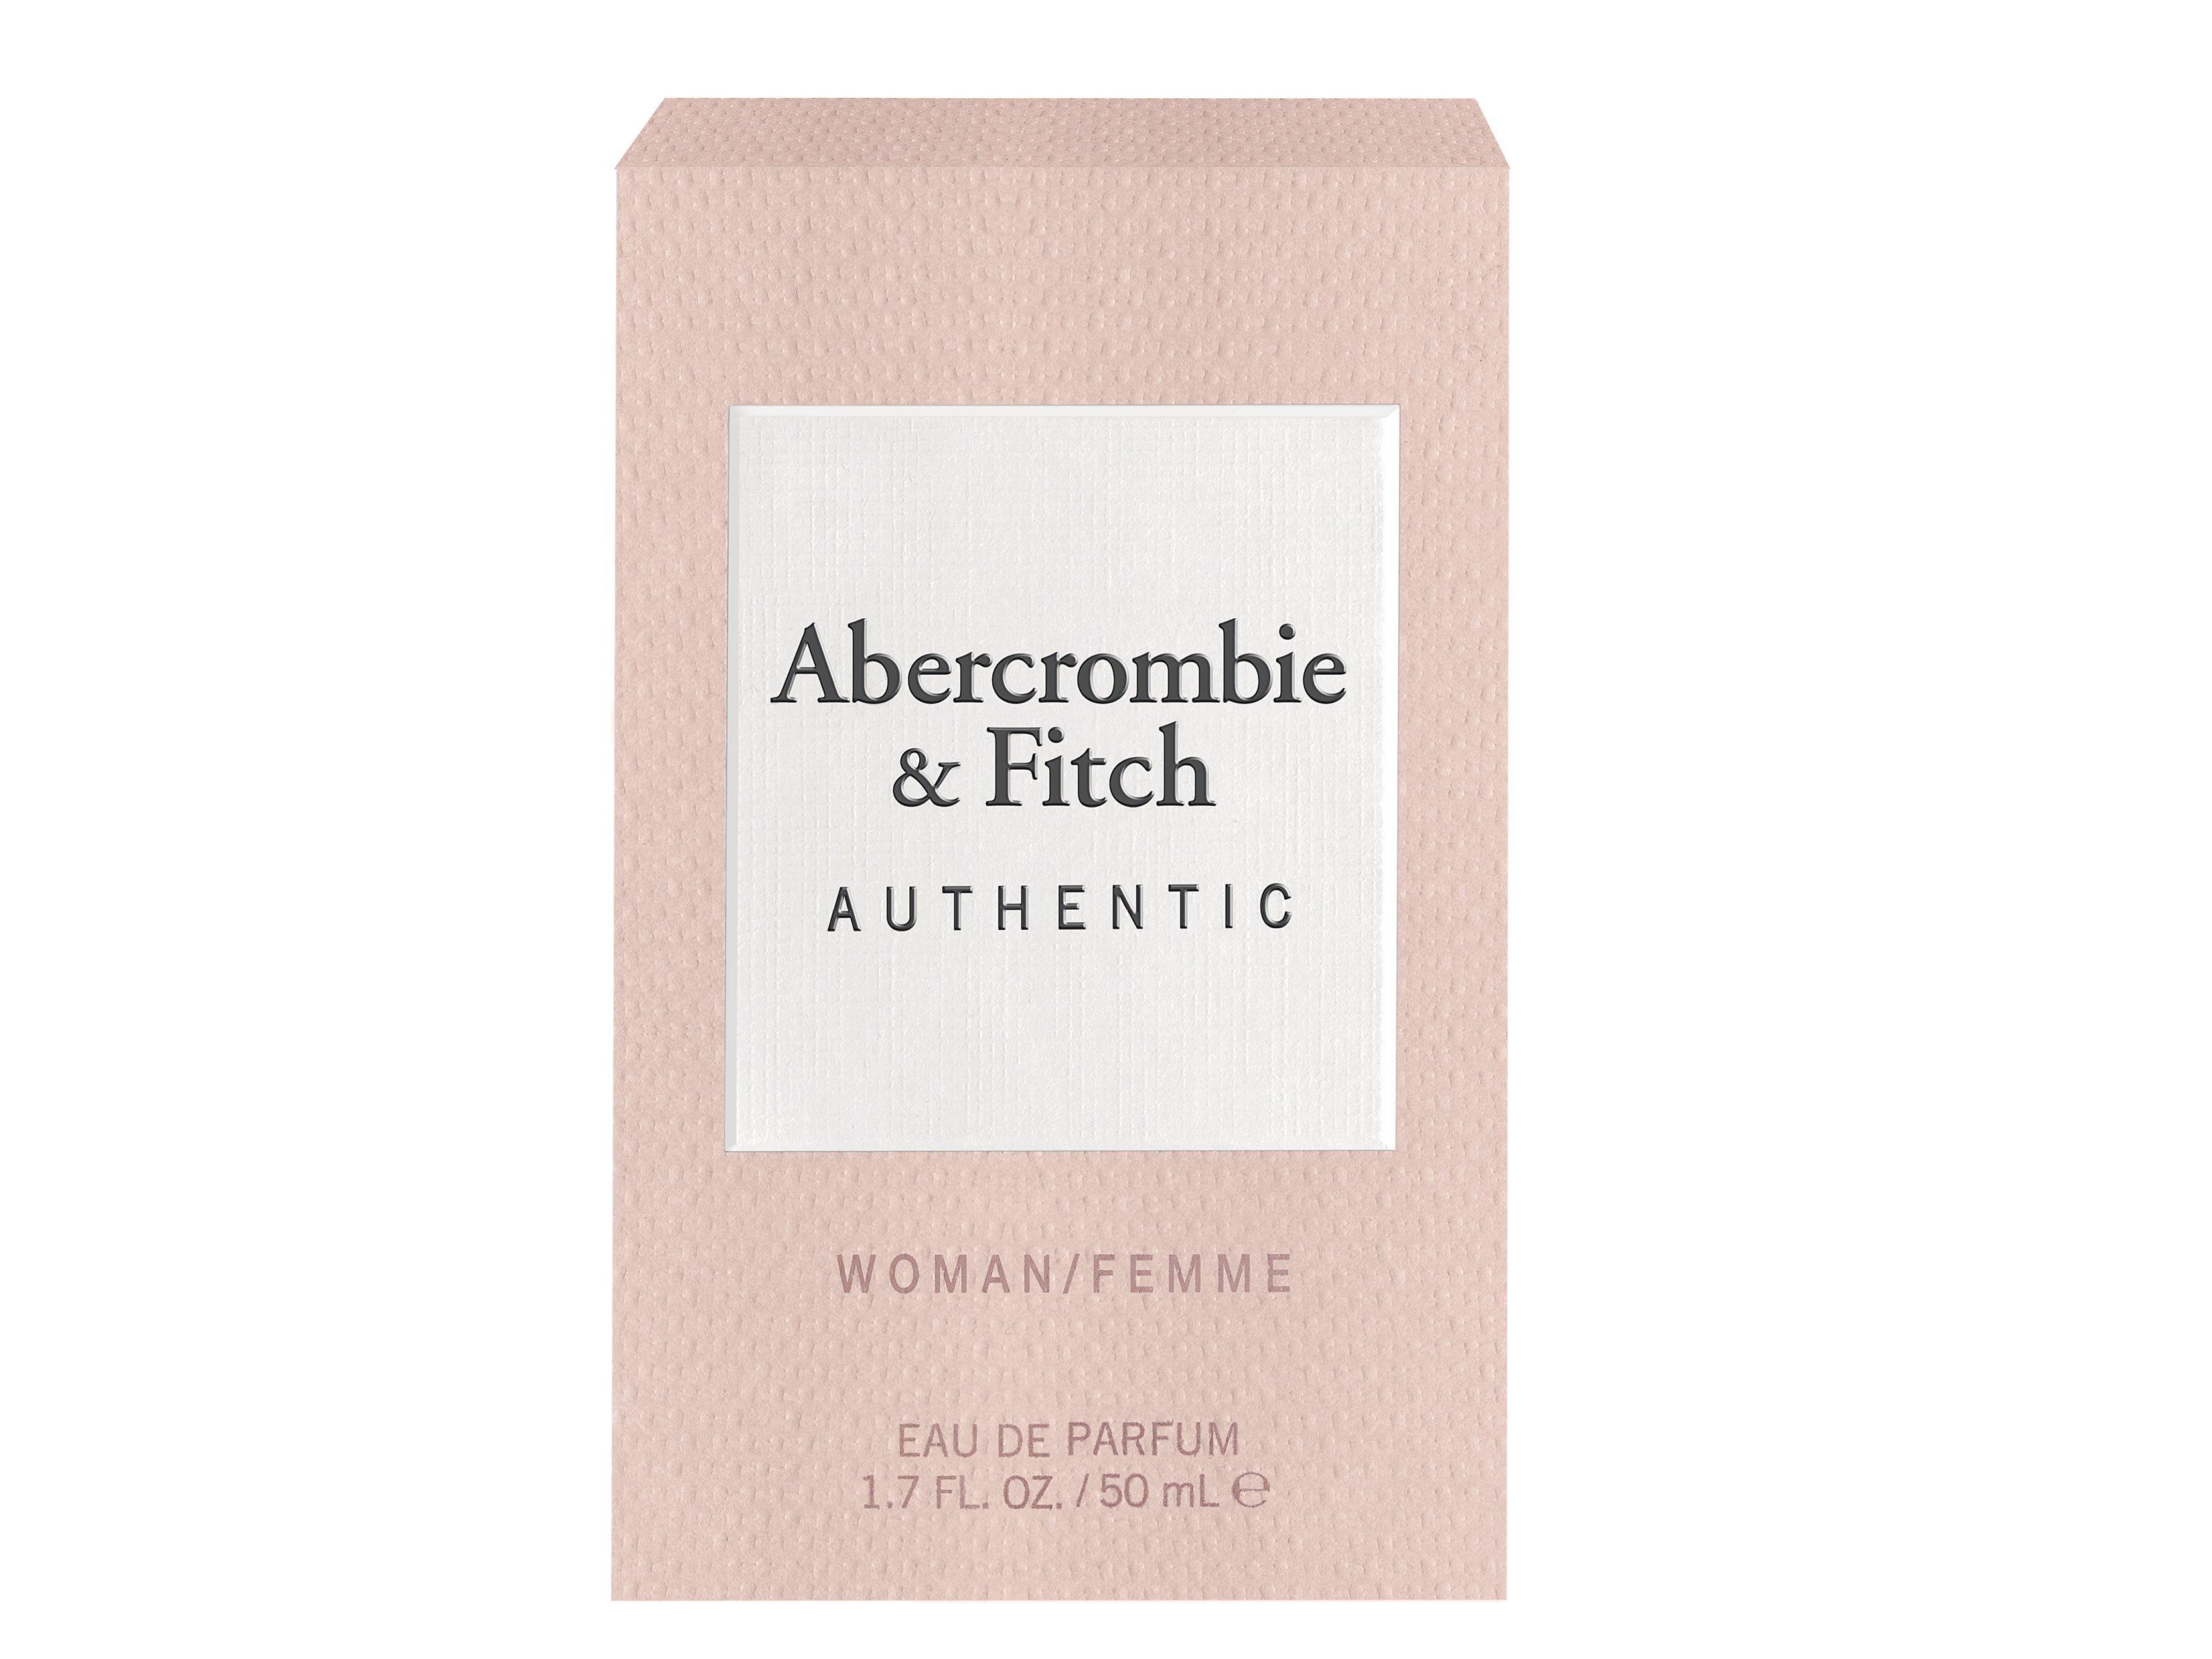 Abercrombie & Fitch  Authentic Woman, Eau De Parfum 